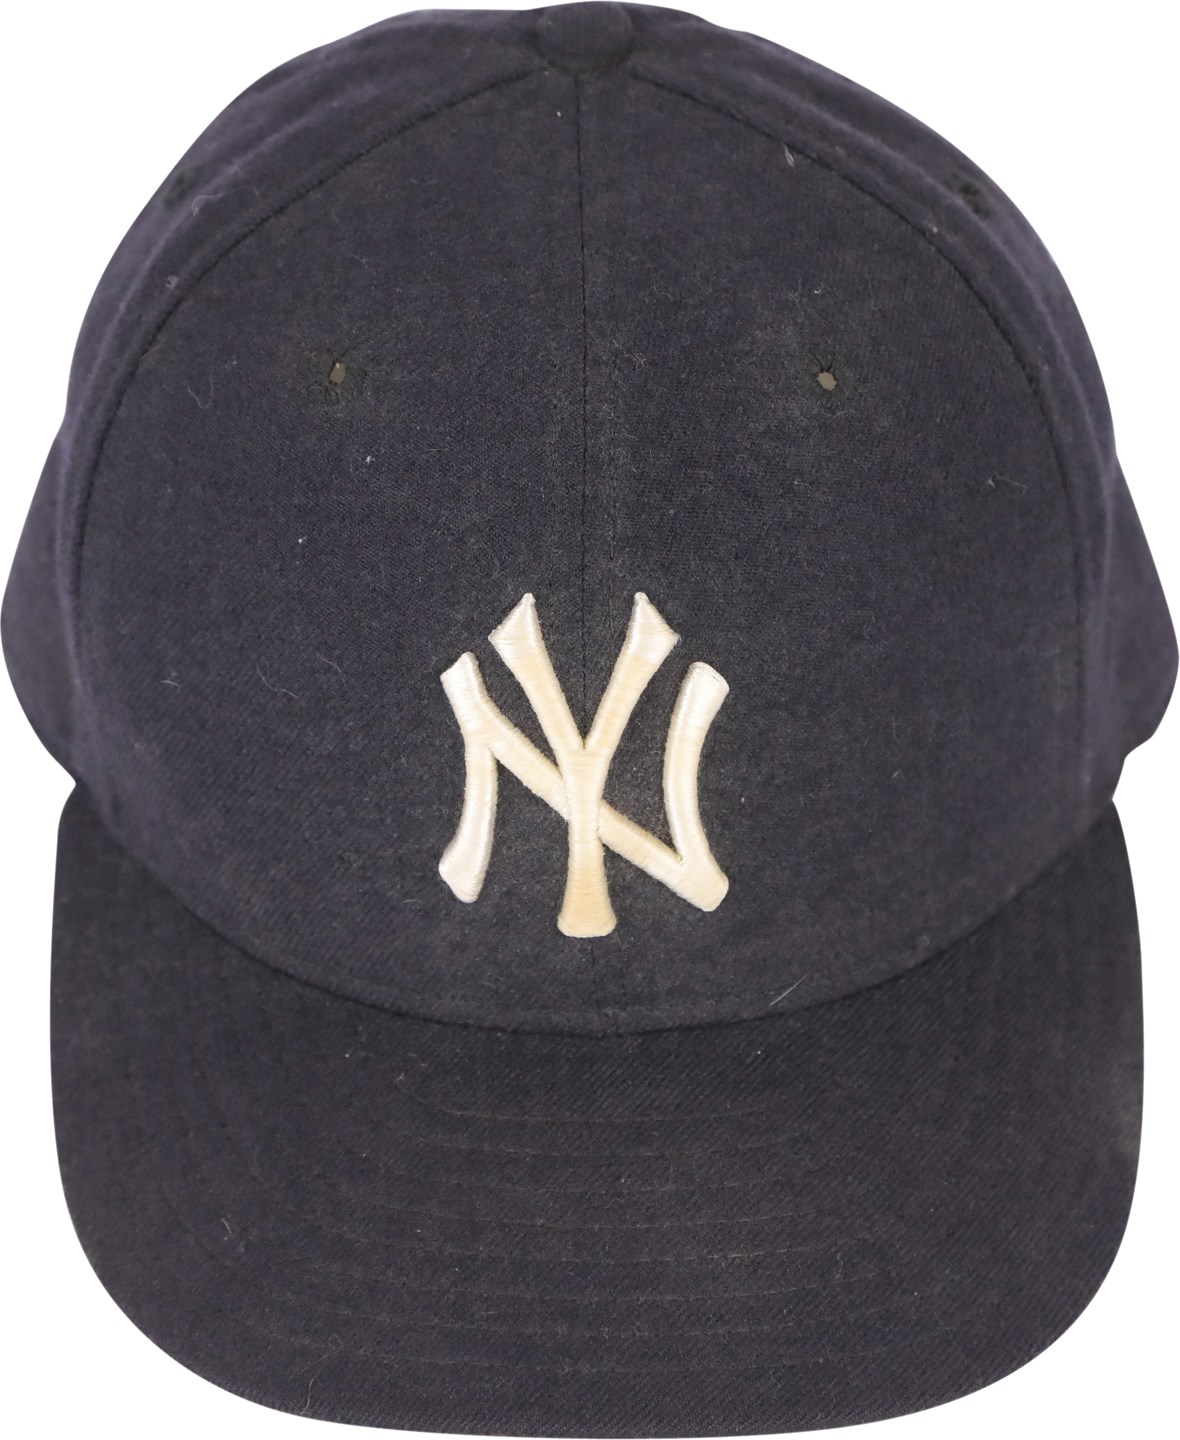 1995-96 Derek Jeter New York Yankees Game Used Rookie Era Hat